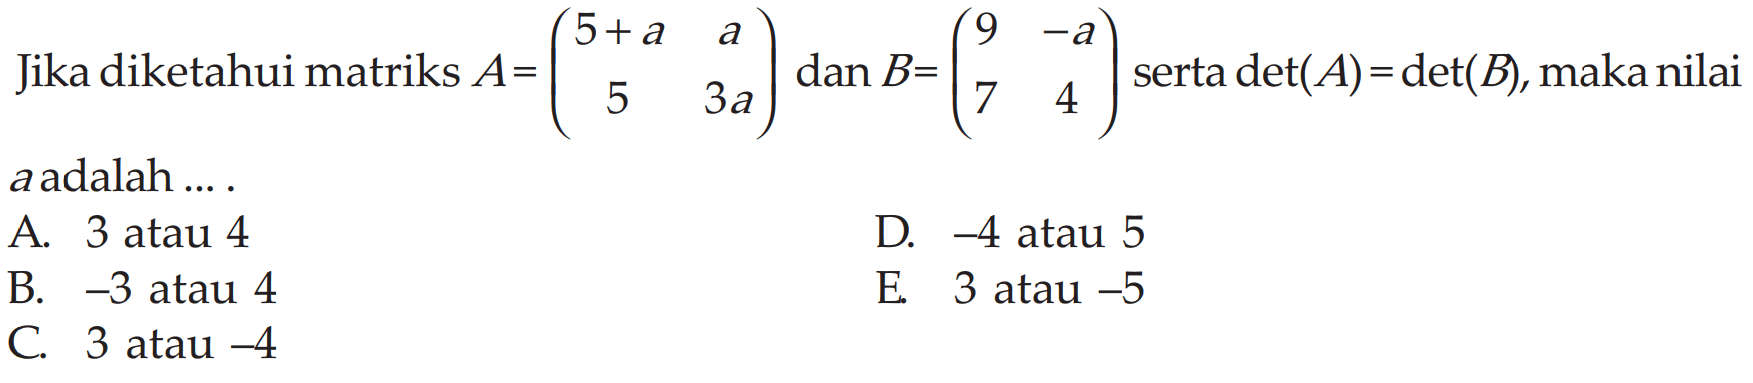 Jika diketahui matriks A=(5+a a 5 3a) dan B=(9 -a 7 4) serta det(A)-det(B), maka nilai a aadalah ...